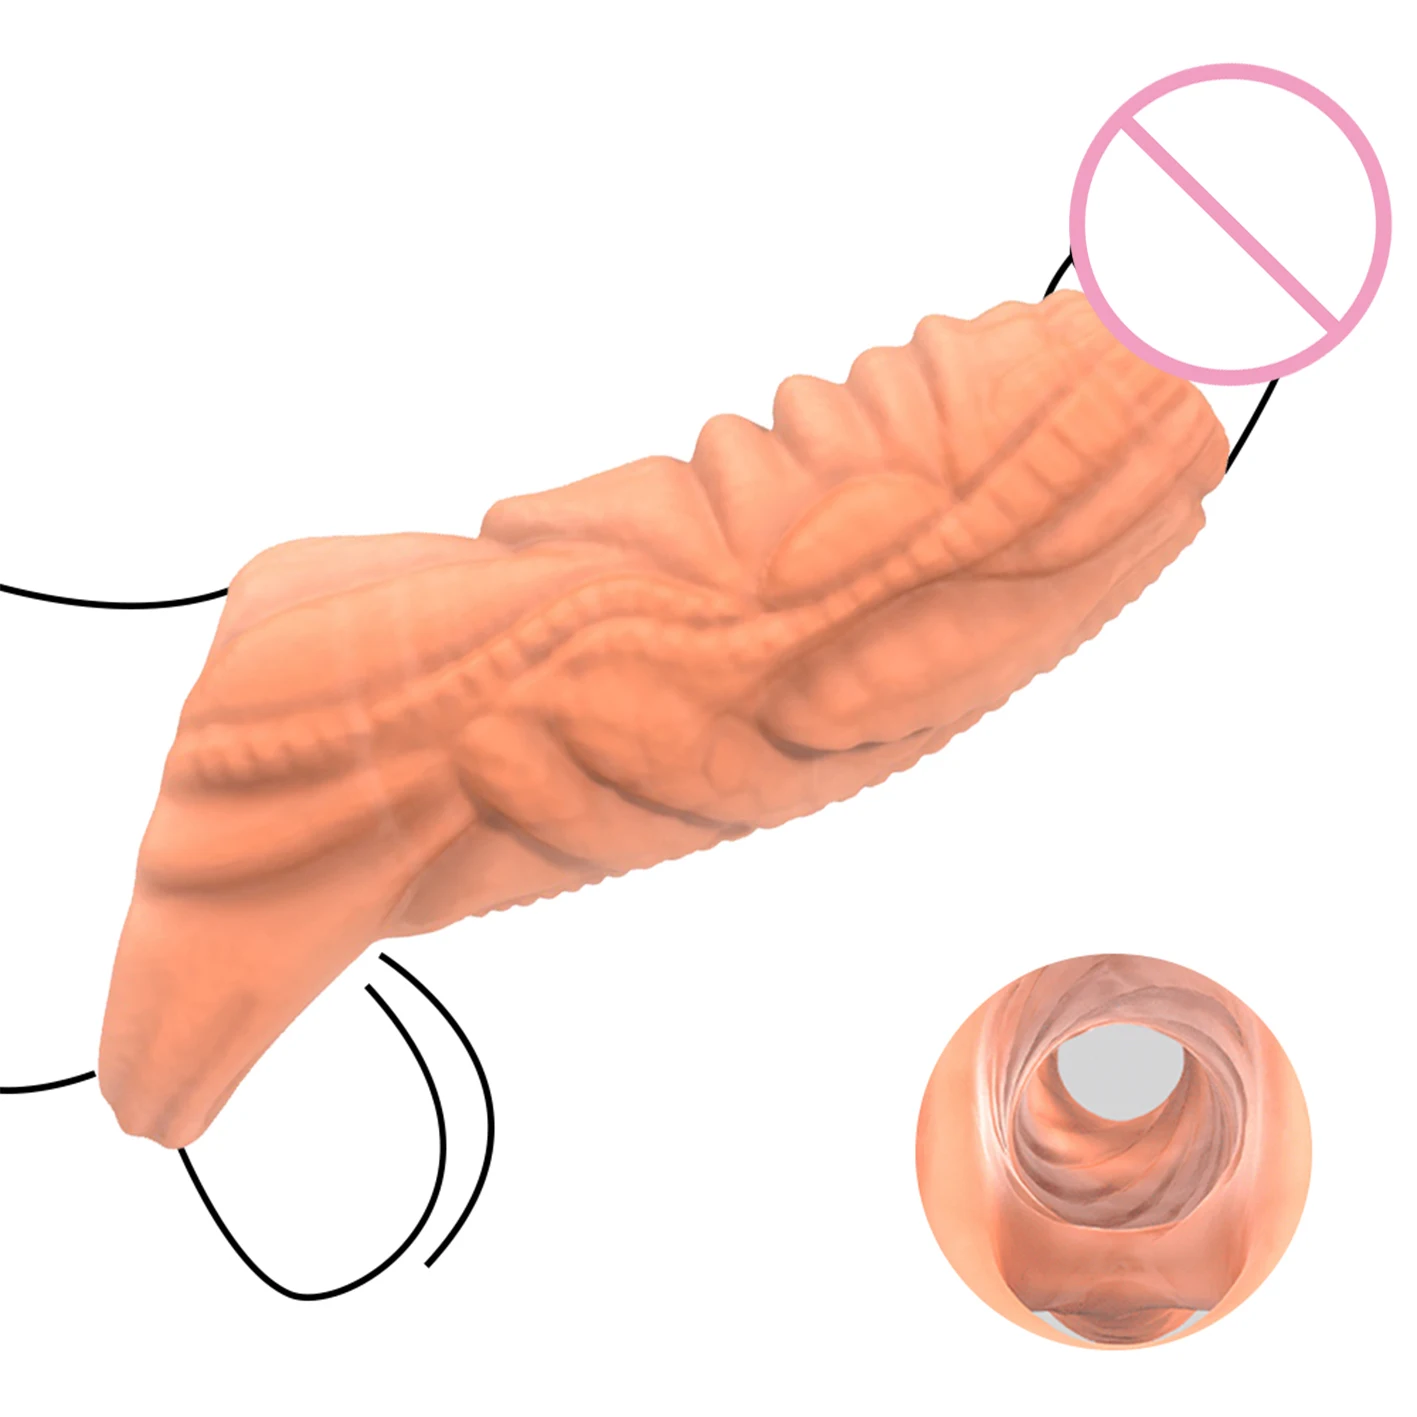 

Кольцо для увеличения пениса, кольцо для члена, раздвижной презерватив, кольцо с замком, секс-игрушки для мужчин, Эротические товары для взрослых